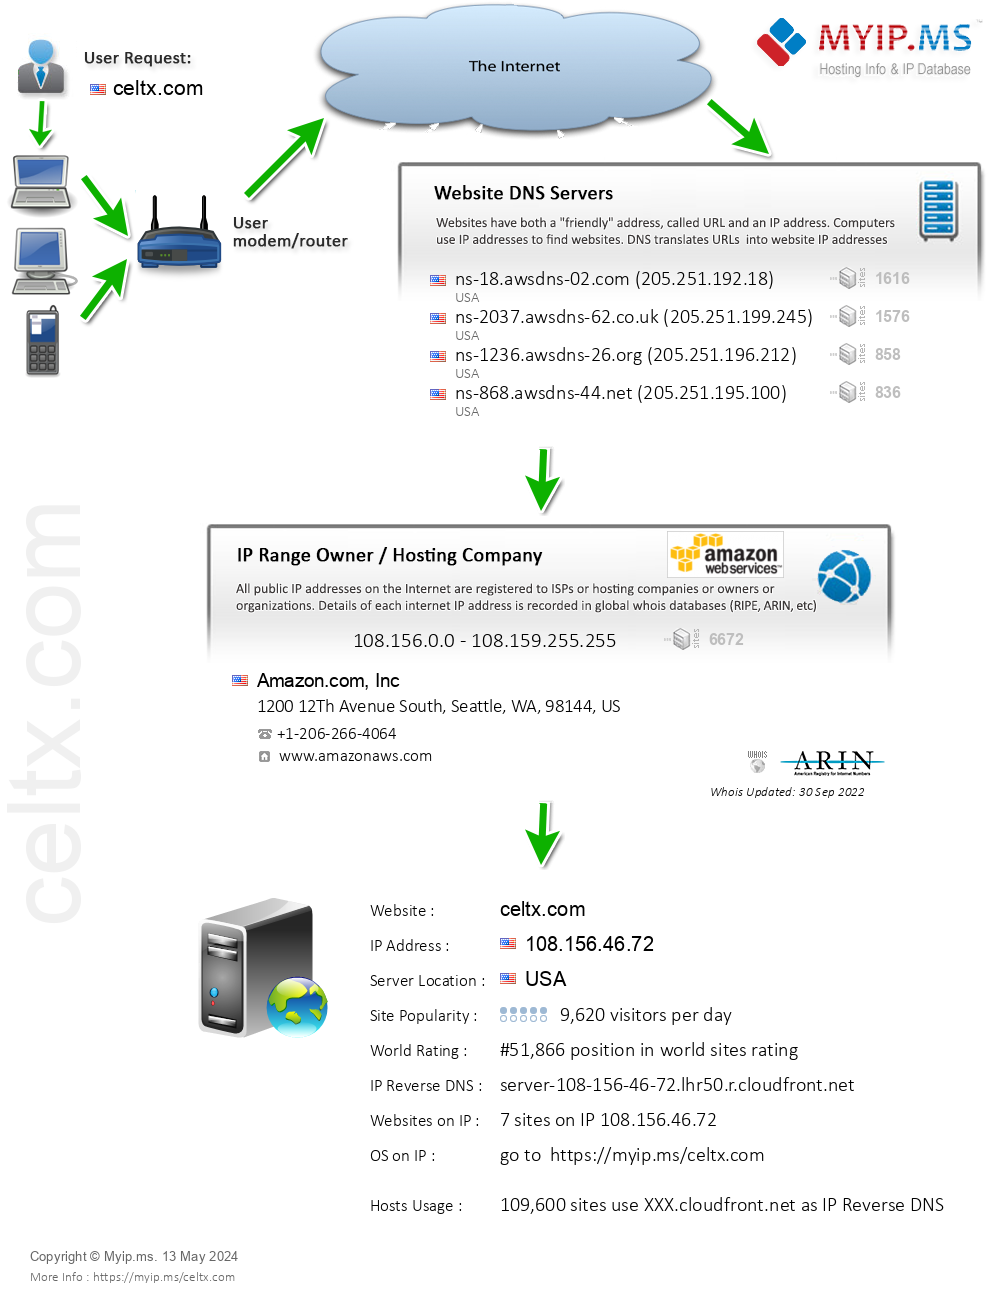 Celtx.com - Website Hosting Visual IP Diagram